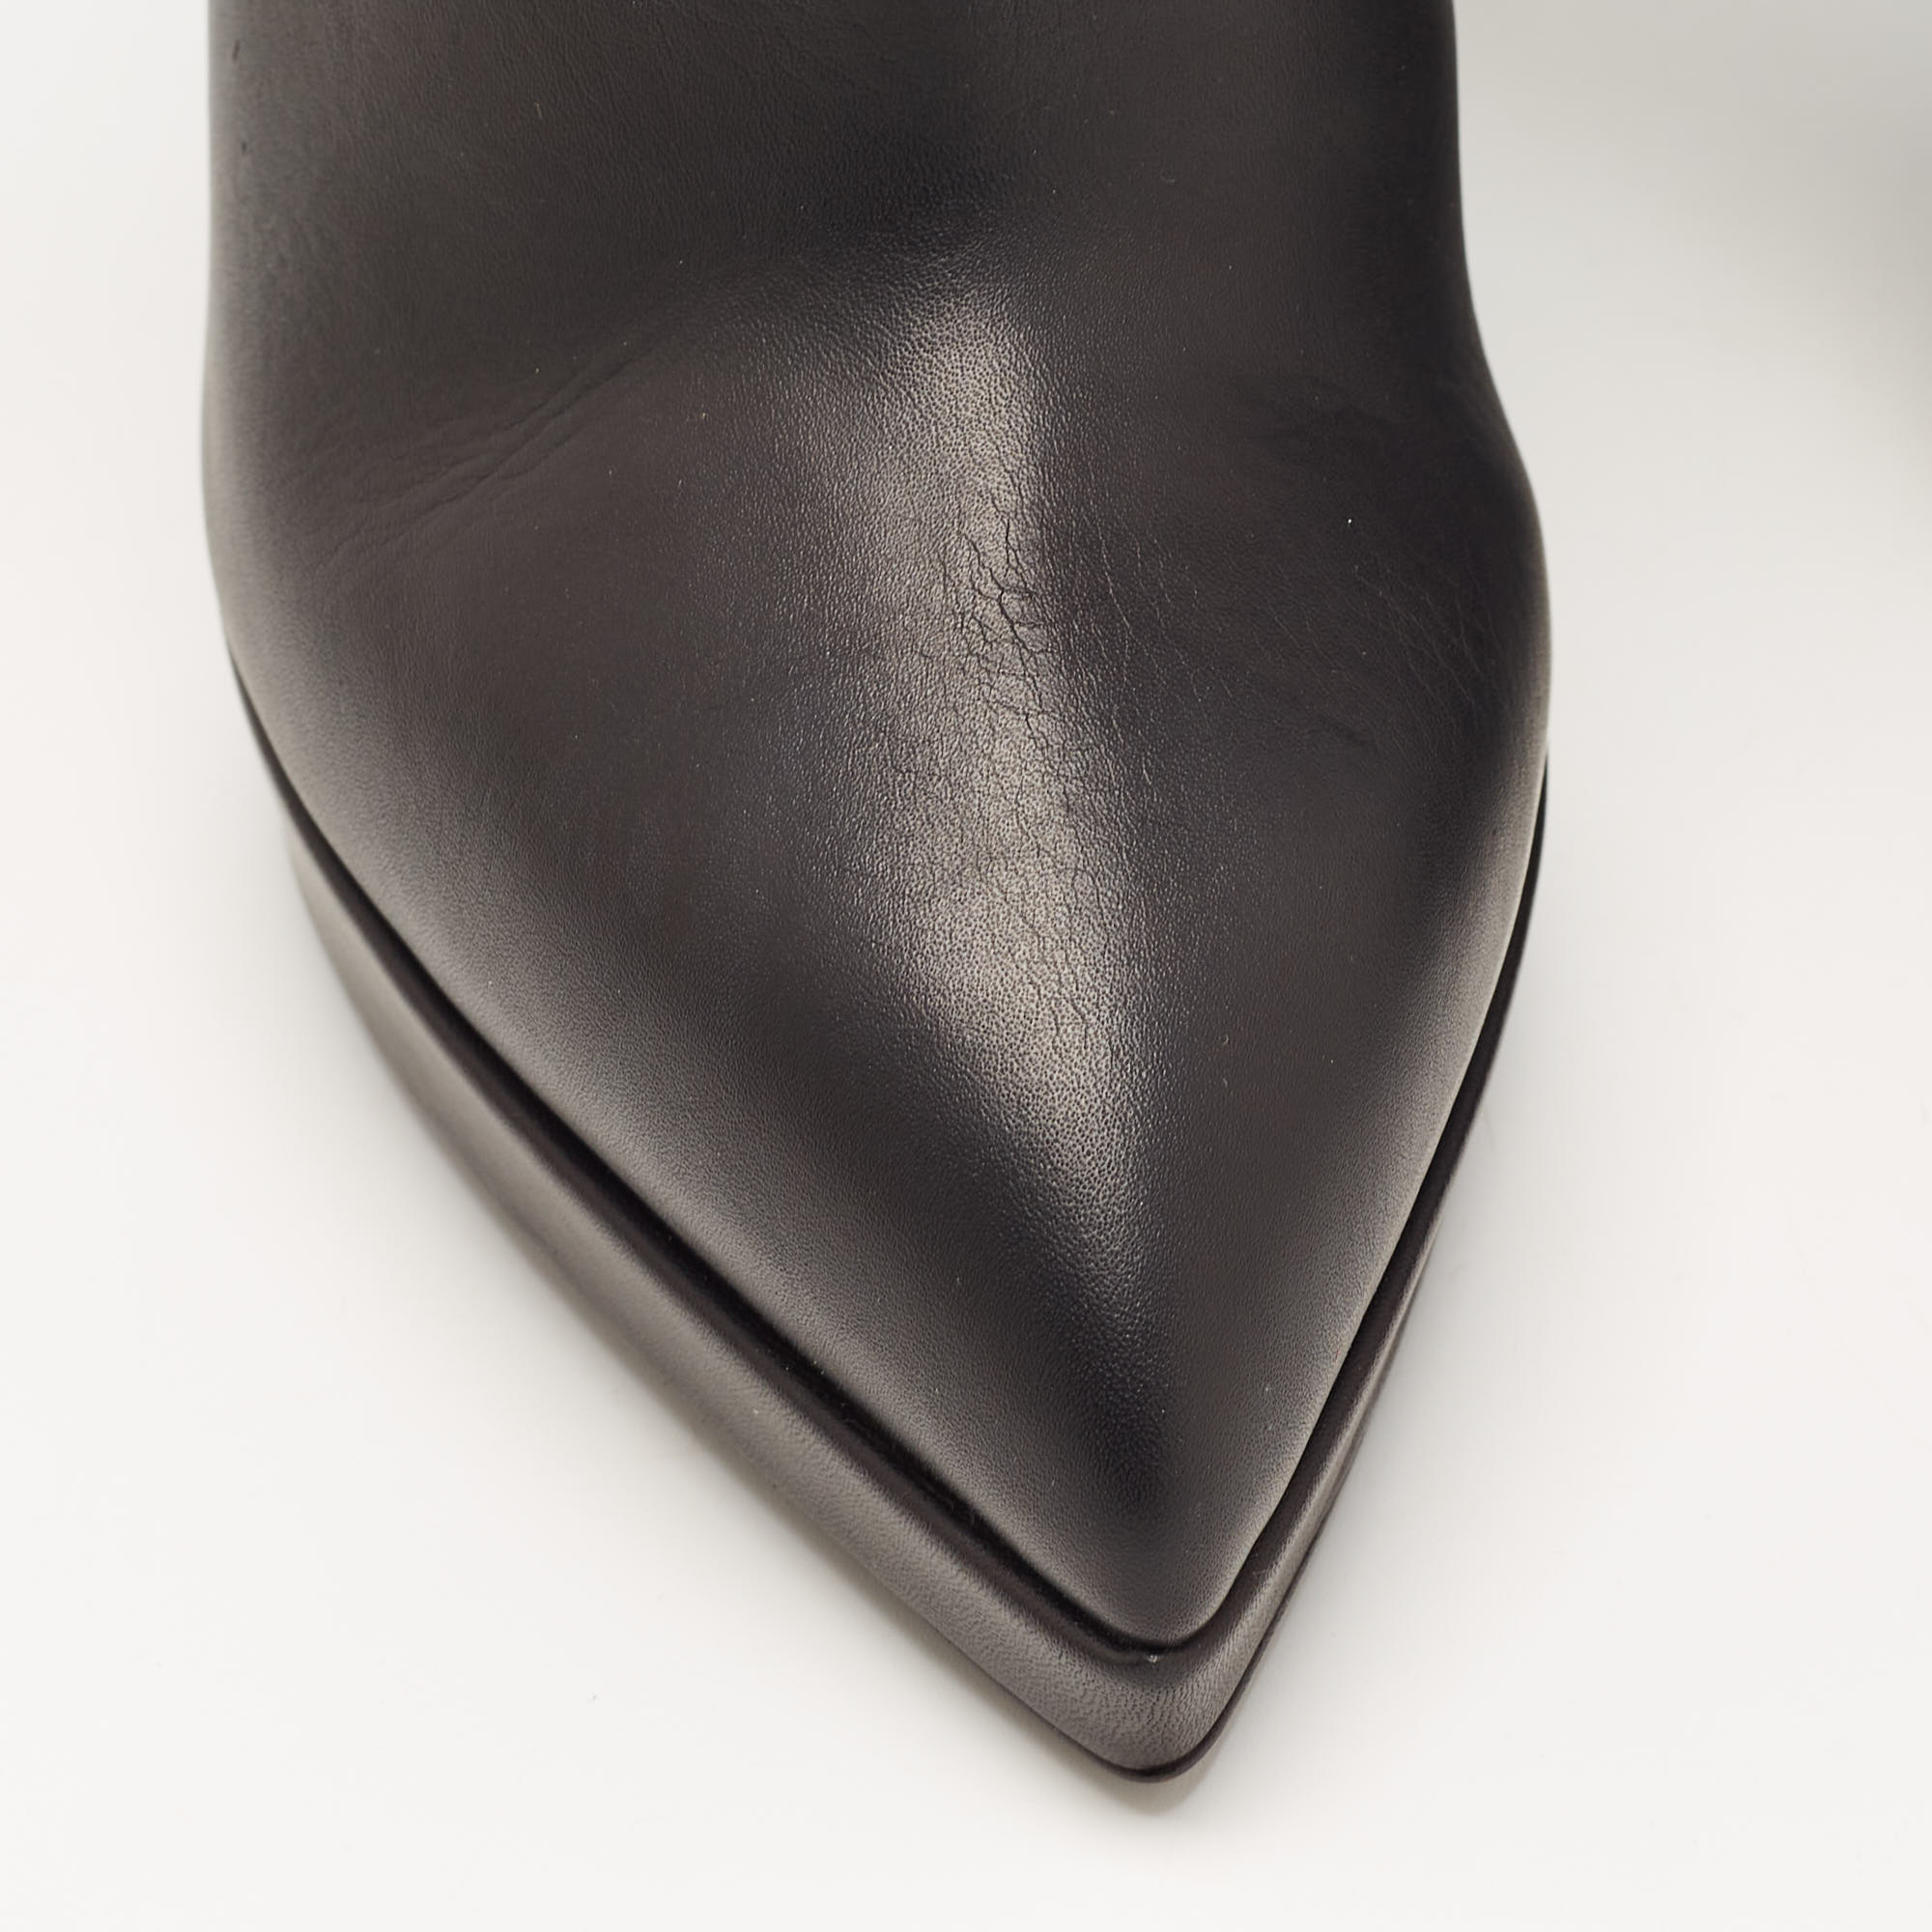 Giuseppe Zanotti Black Leather Emy Stud Ankle Boots Size 41